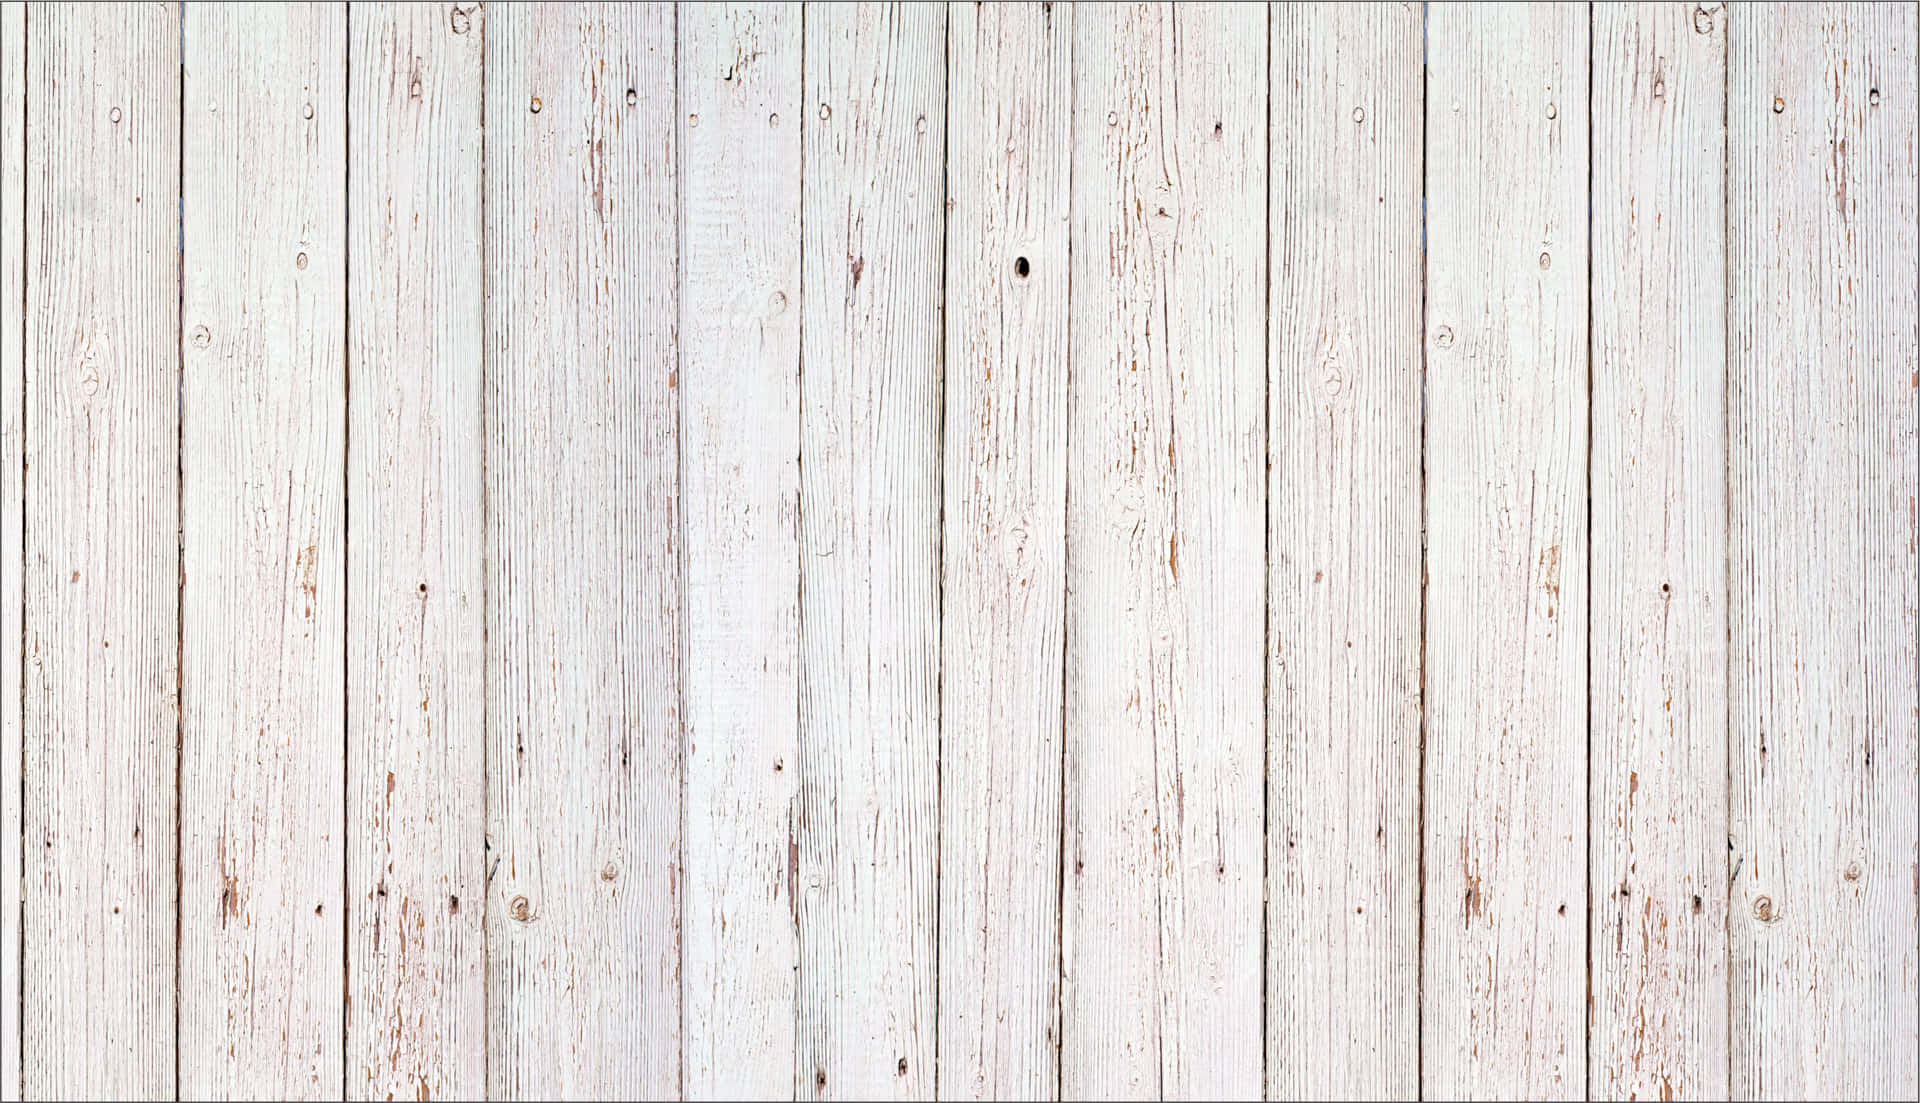 Hình nền gỗ màu nâu trắng đẹp: Thiết kế độc đáo của hình nền gỗ màu nâu trắng sẽ làm cho màn hình của bạn trở nên đẹp và sang trọng hơn bao giờ hết. Hãy ngắm nhìn những đường vân gỗ tinh tế cùng sắc màu nâu trắng tuyệt đẹp trên hình nền này.